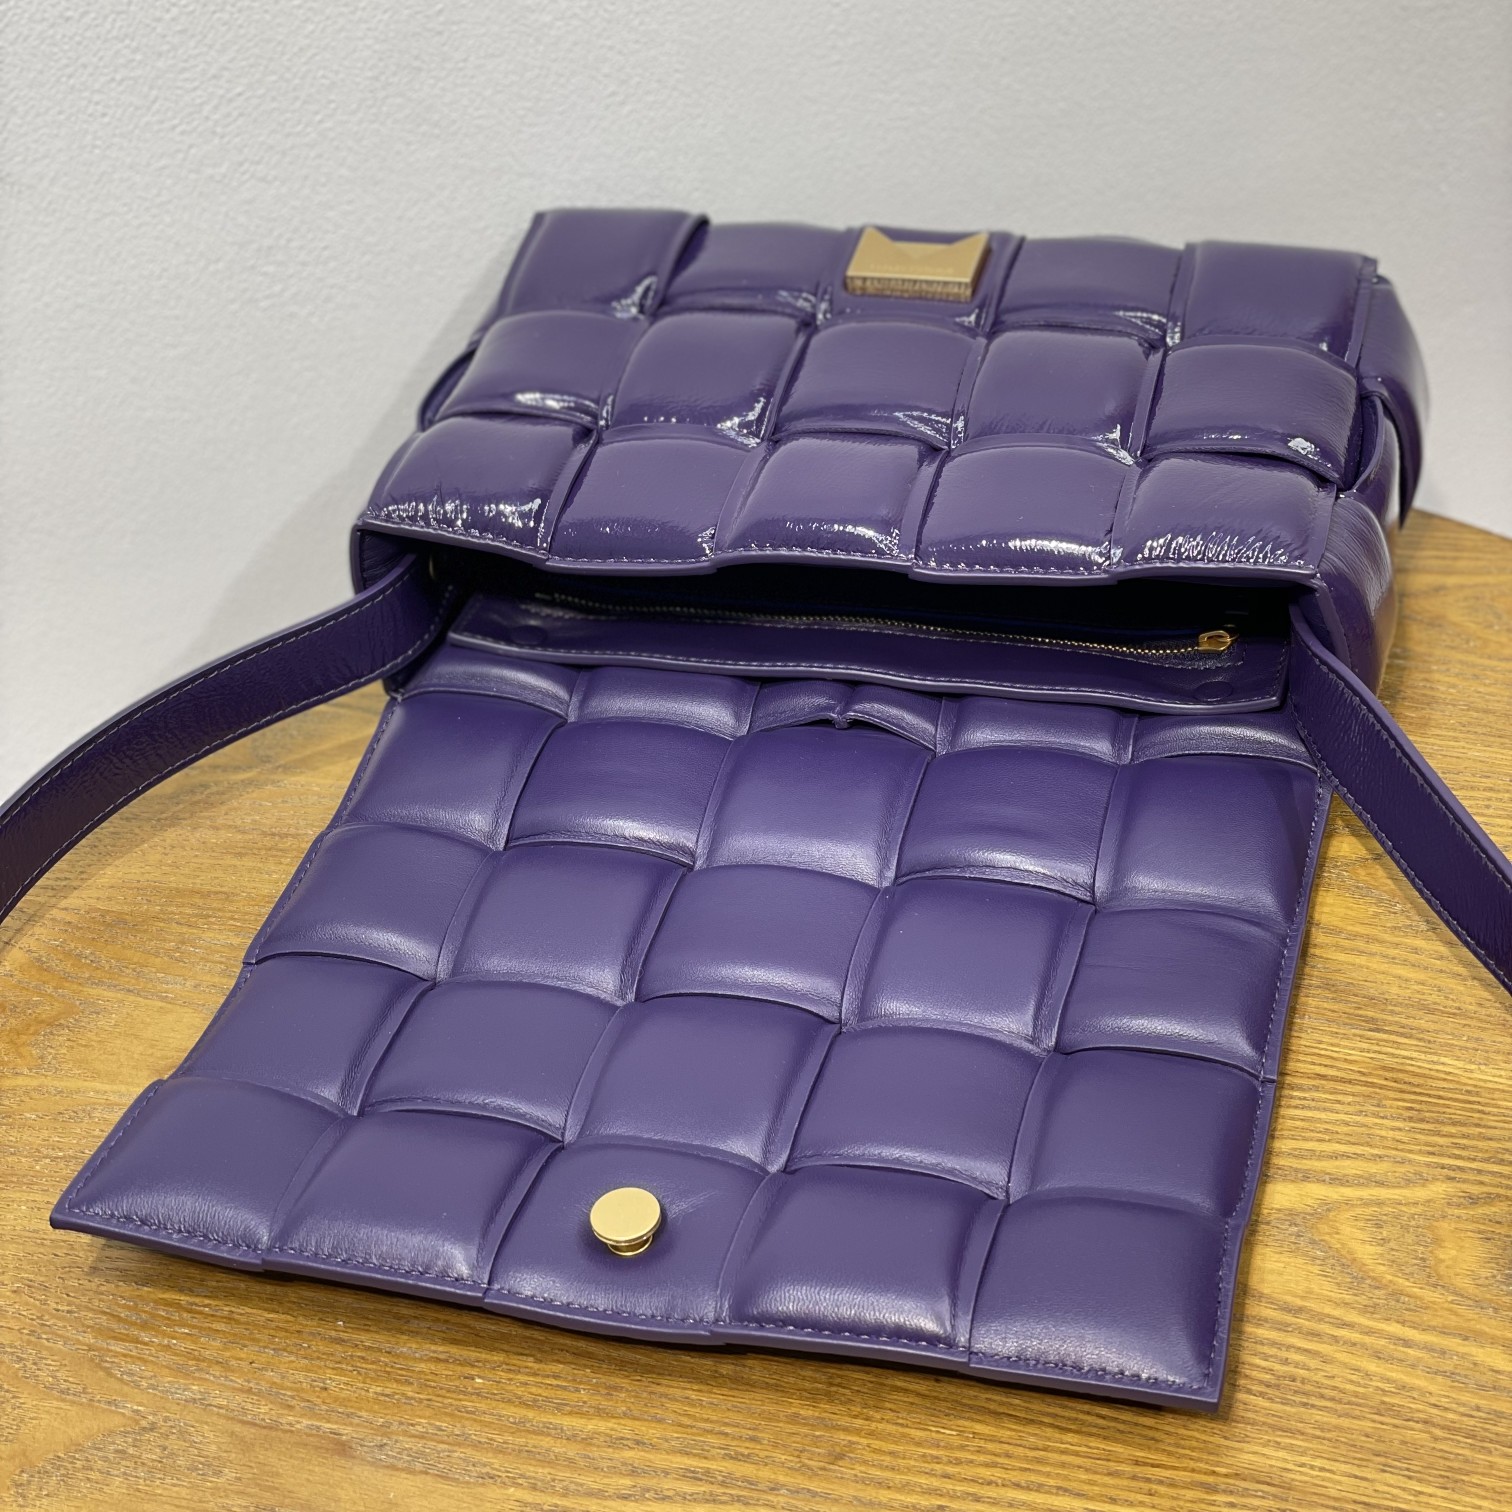 BV Padded Cassette爆款 枕头包 光泽夹棉鹿皮 三角哑光金属扣 高级又复古 26cm 紫色